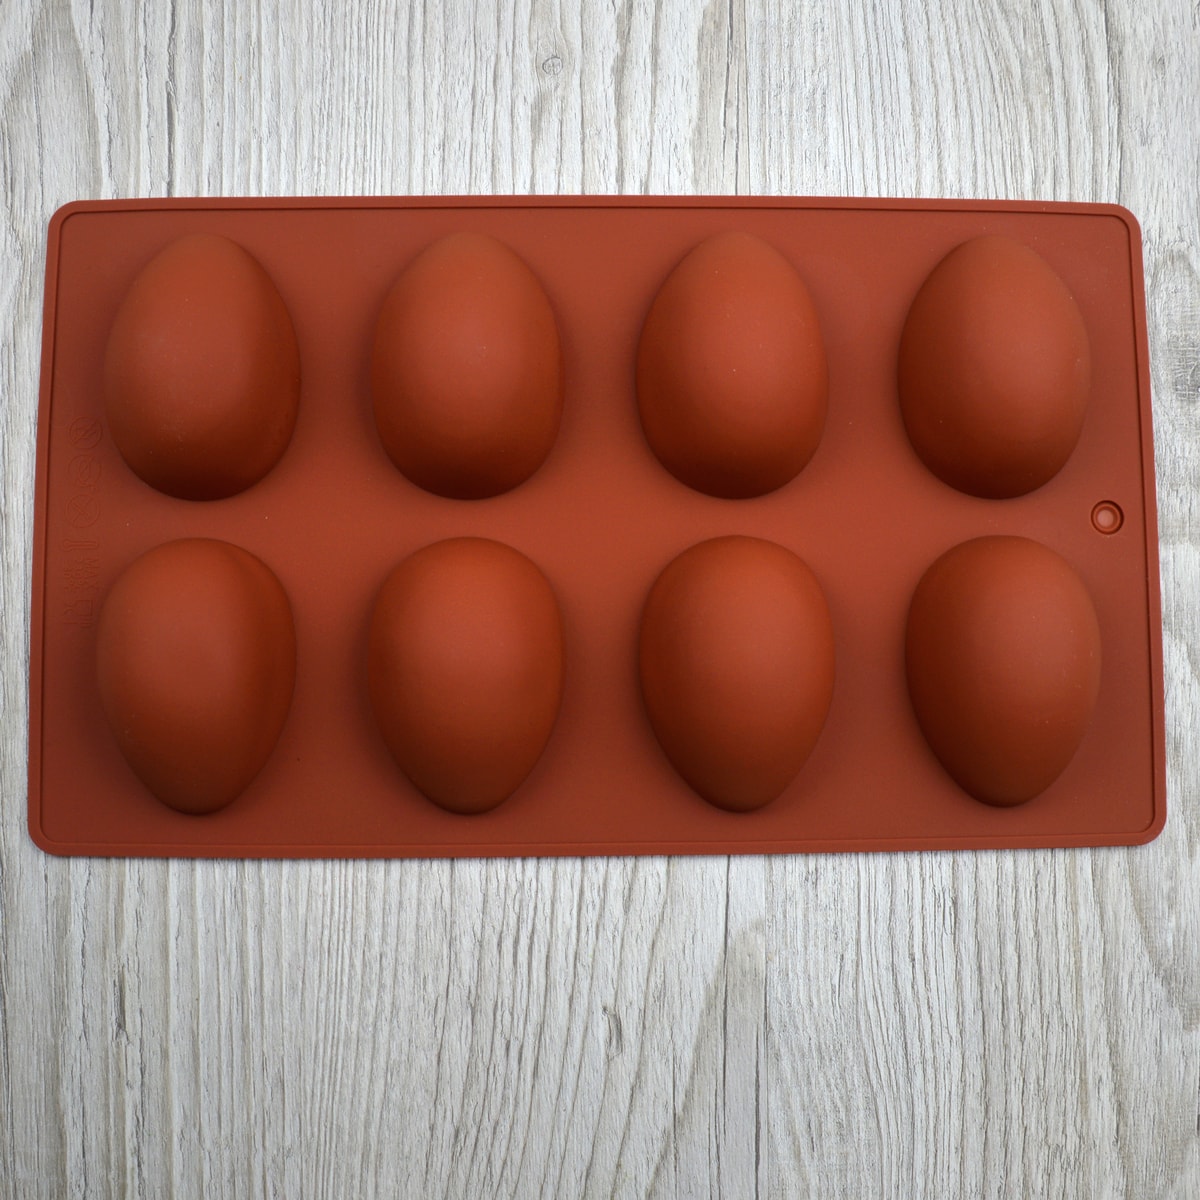 Купить форму для яиц. Форма силиконовая яйцо 8 ячеек. Силиконовая форма яйцо 8 в 1. Форма яйца. Силиконовые формы яиц глянцевые.